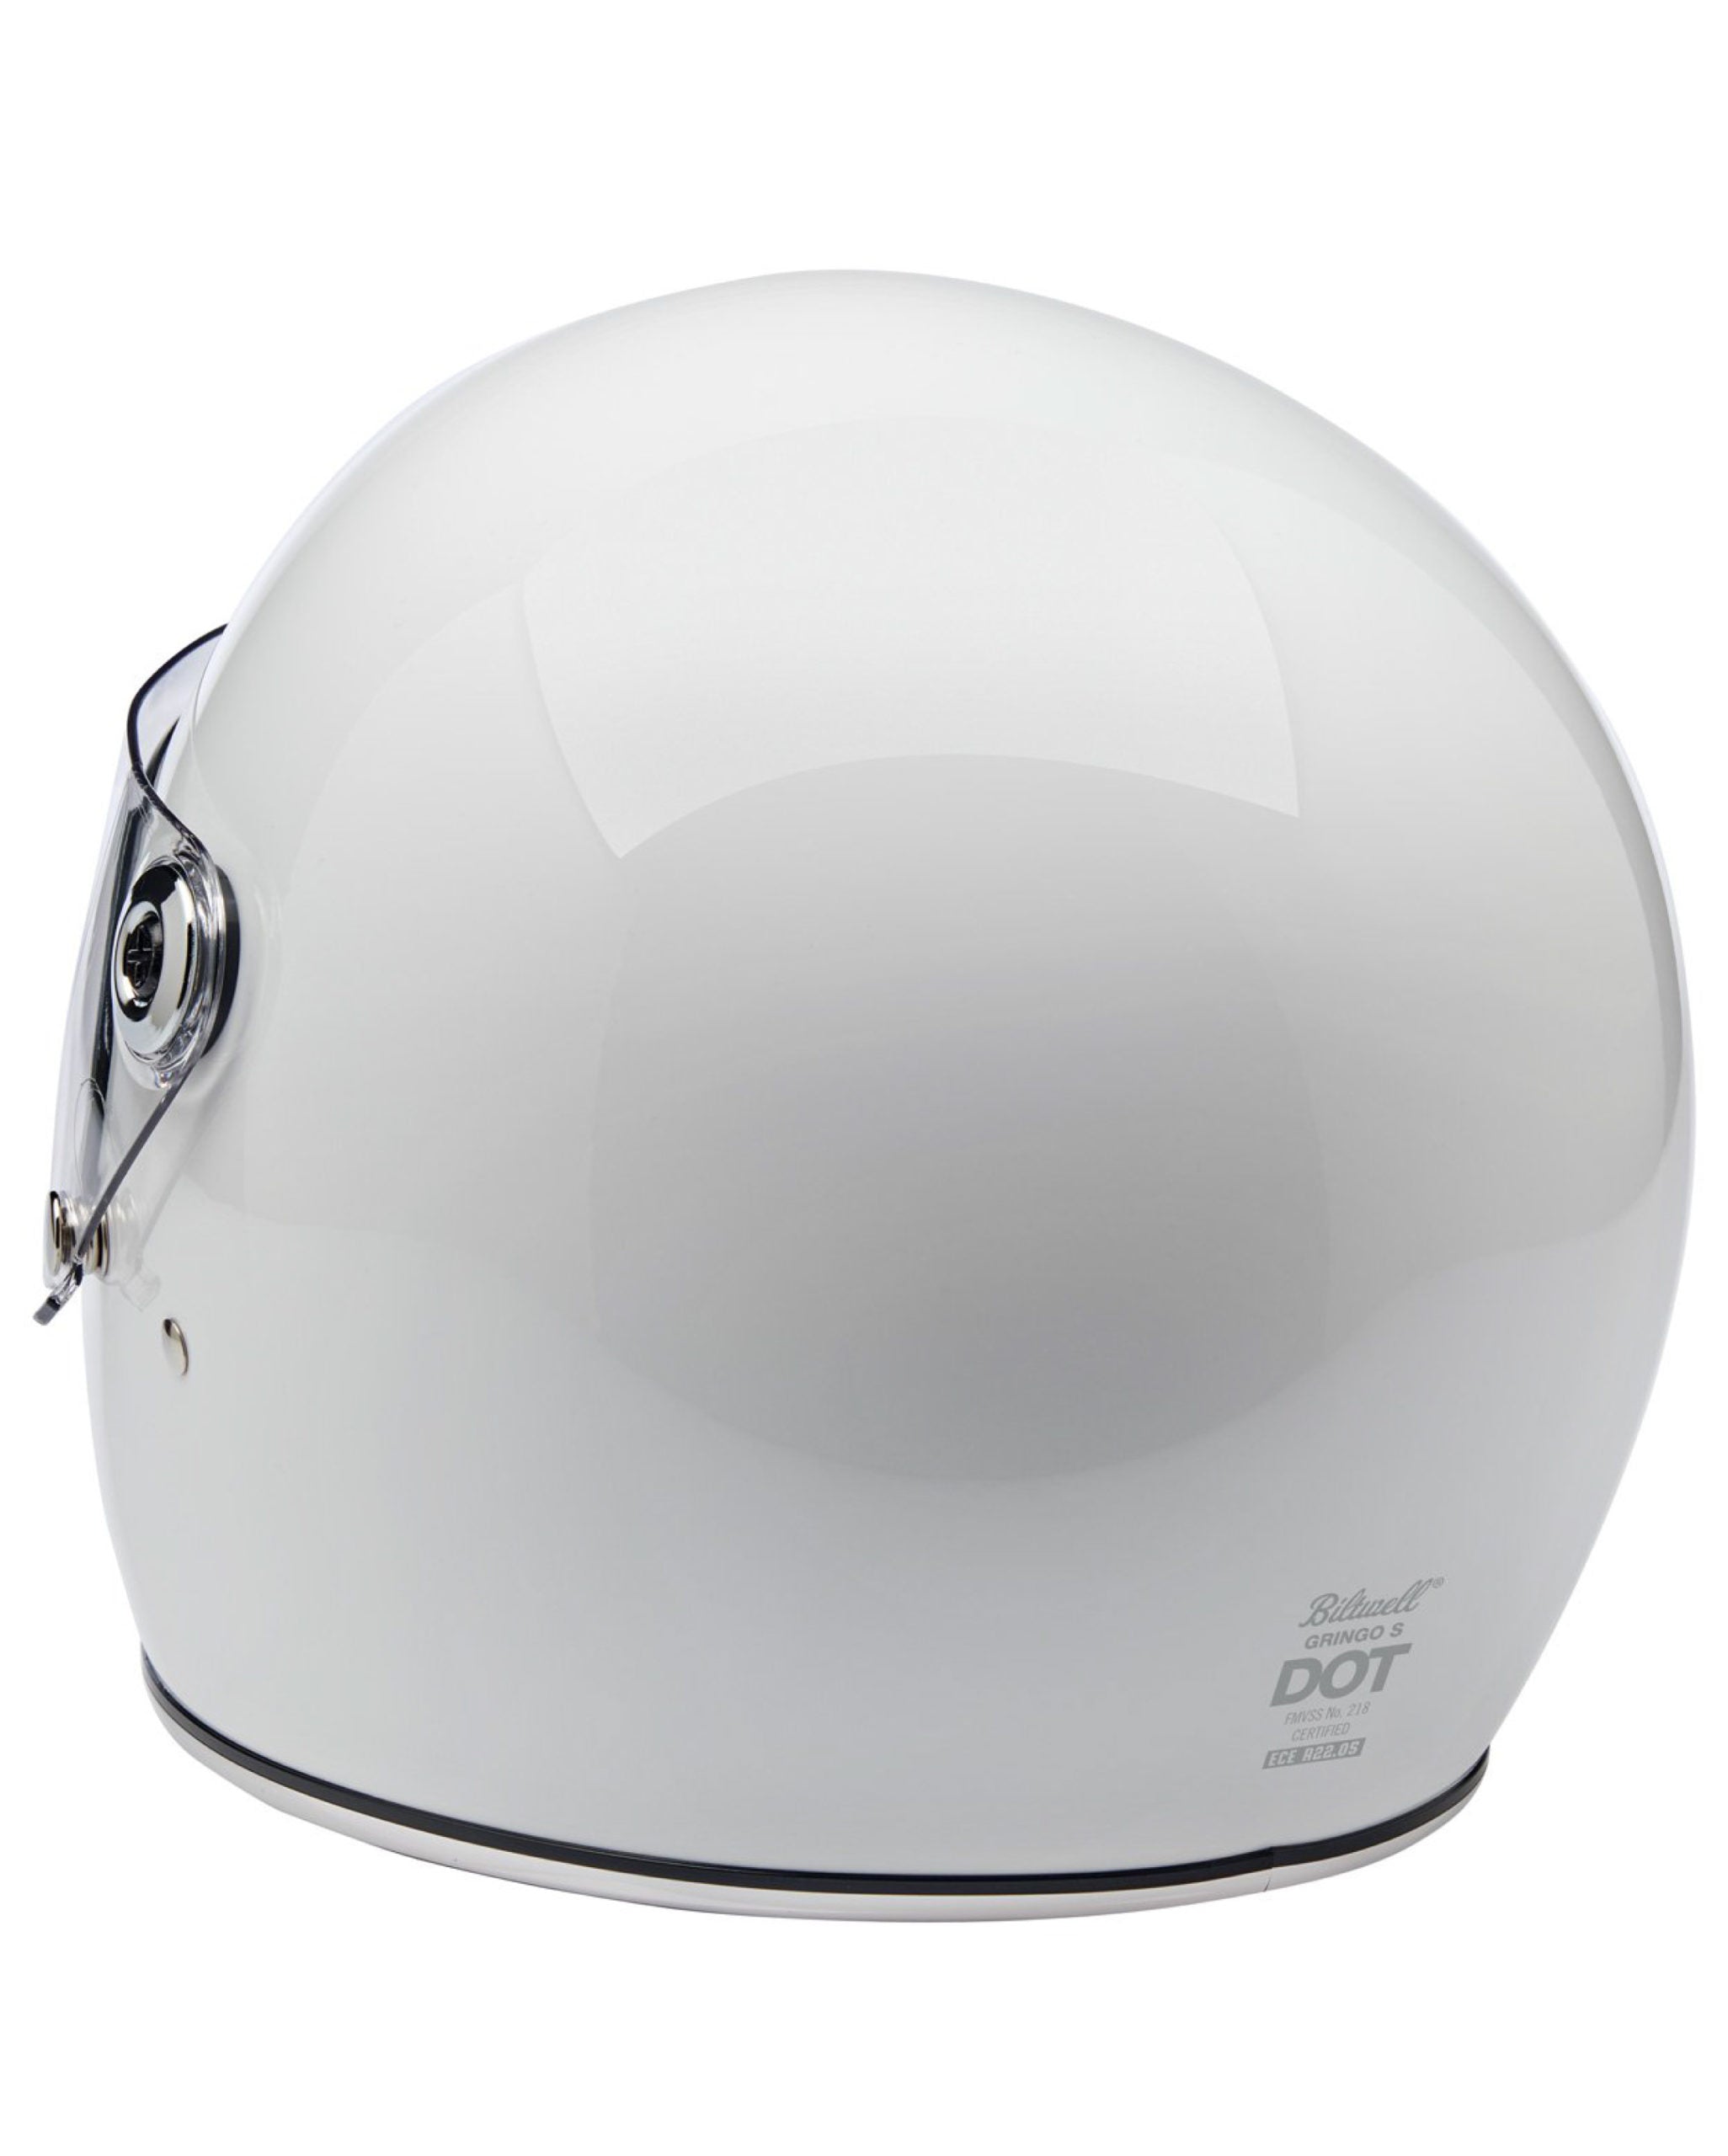 Gringo S ECE Helmet White